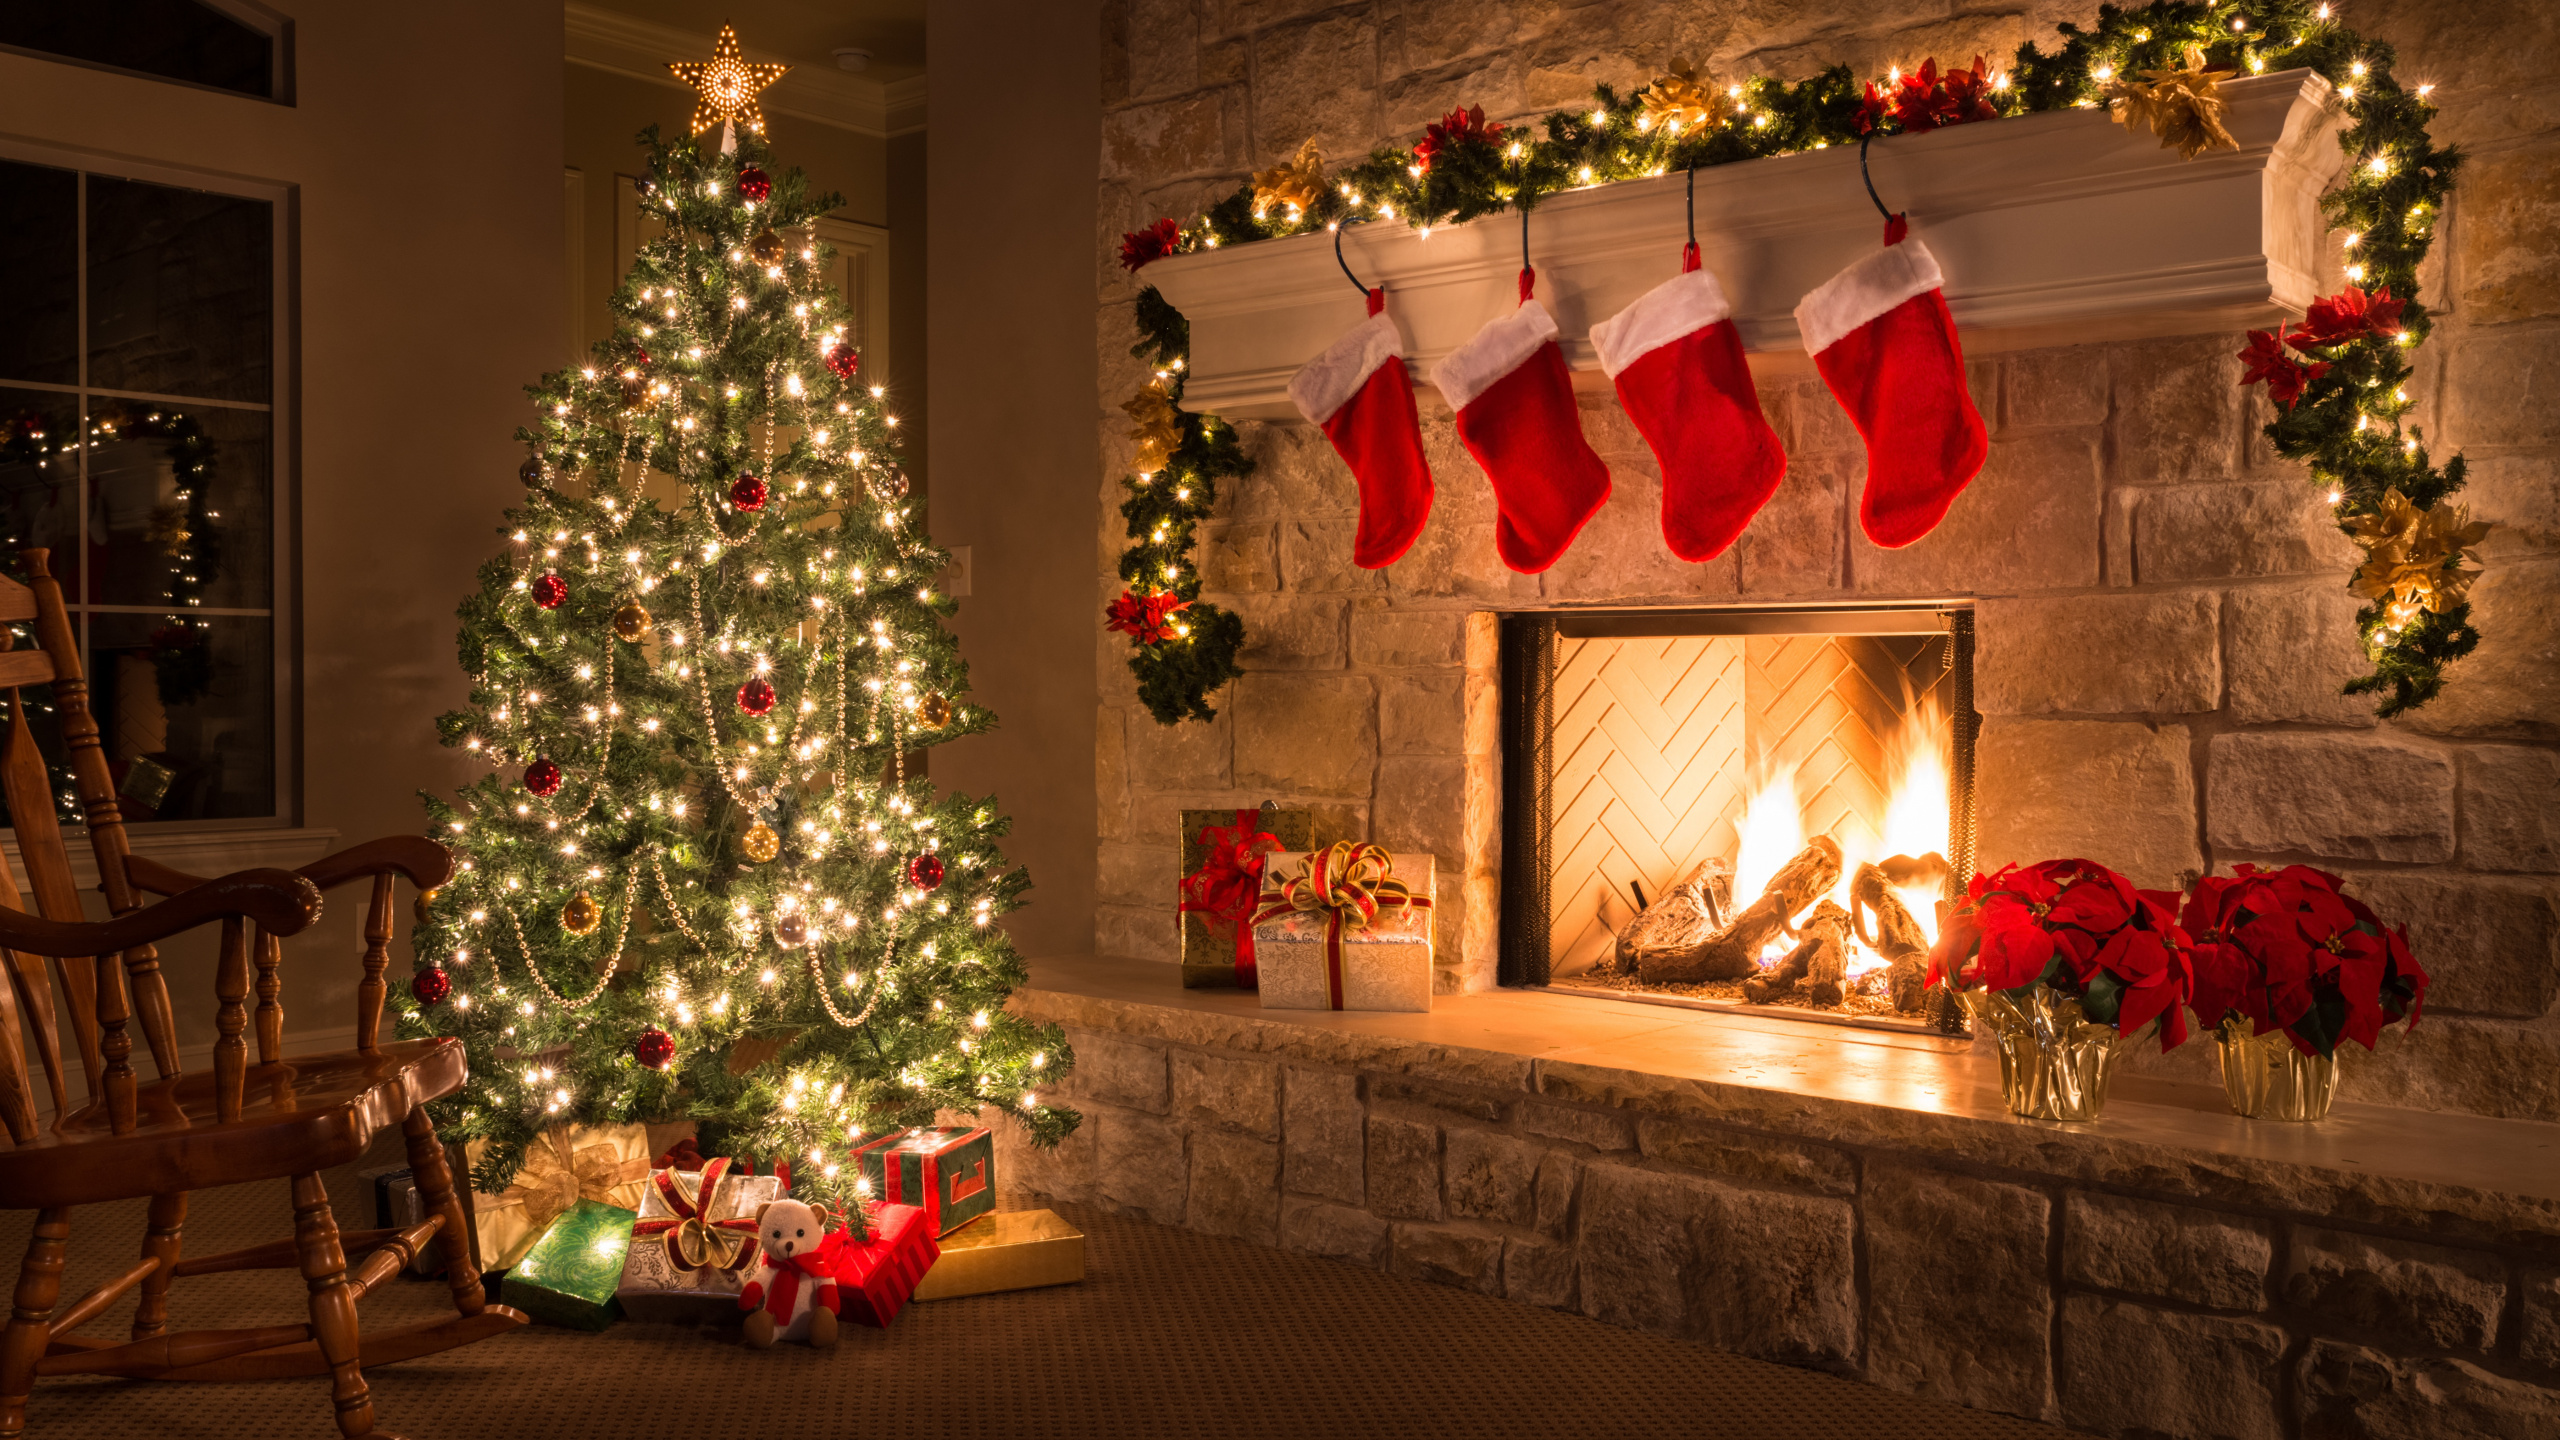 圣诞节那天, 圣诞装饰, 圣诞树, 圣诞节, 圣诞前夕 壁纸 2560x1440 允许